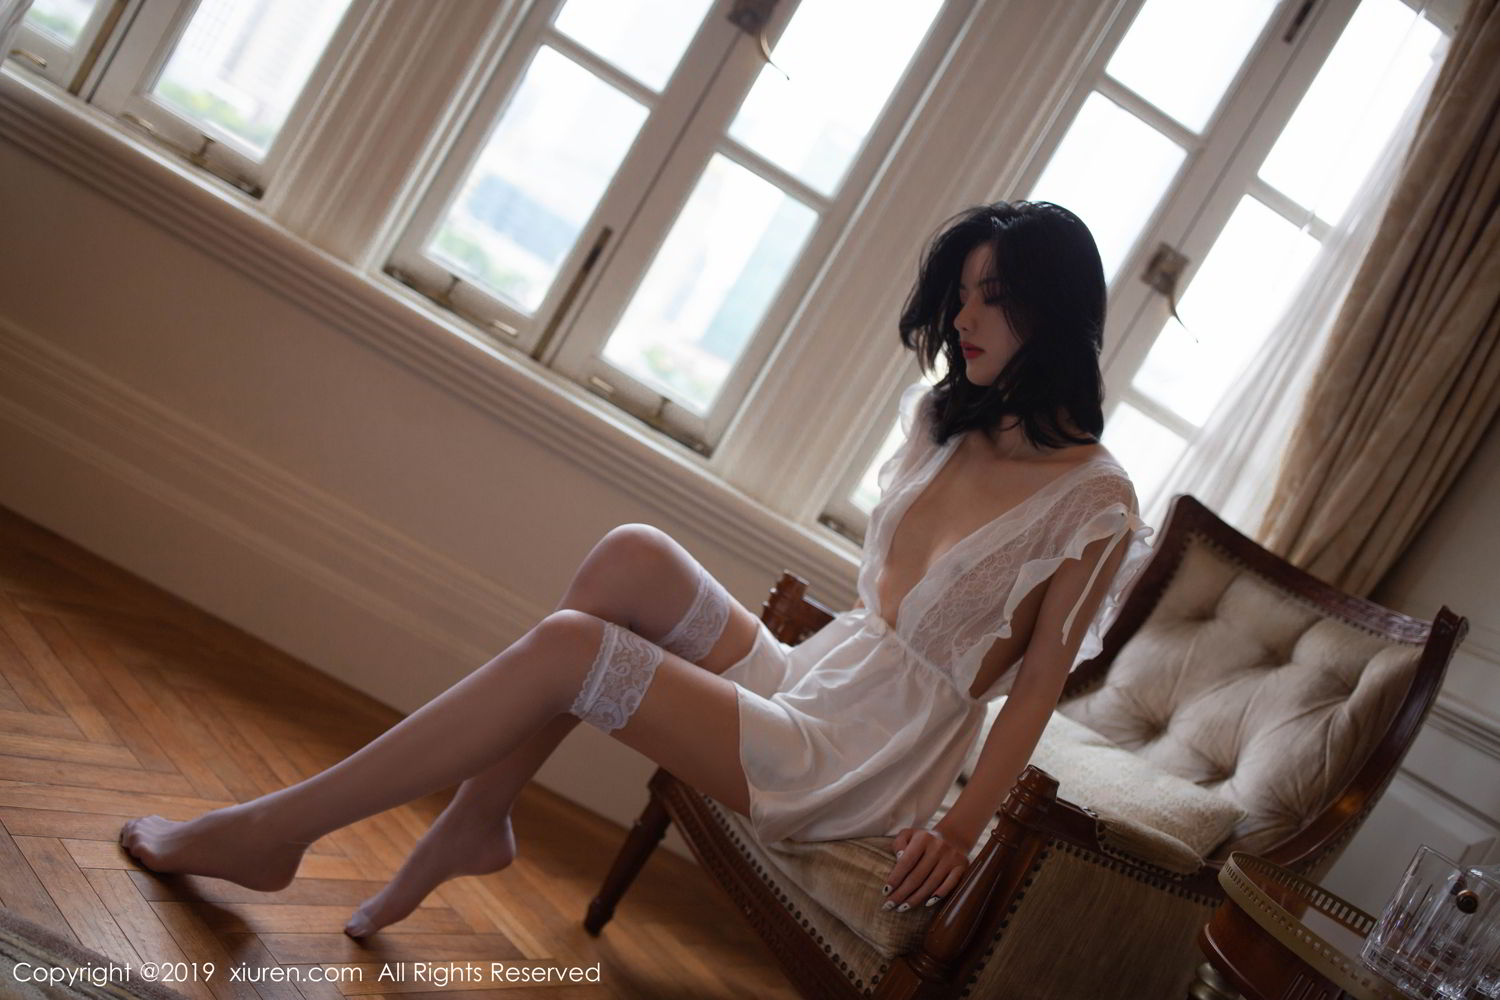 情慾流動～性感情婦深閨寂寞「薄紗圍裙」透出小點，底褲裡也一片純白～